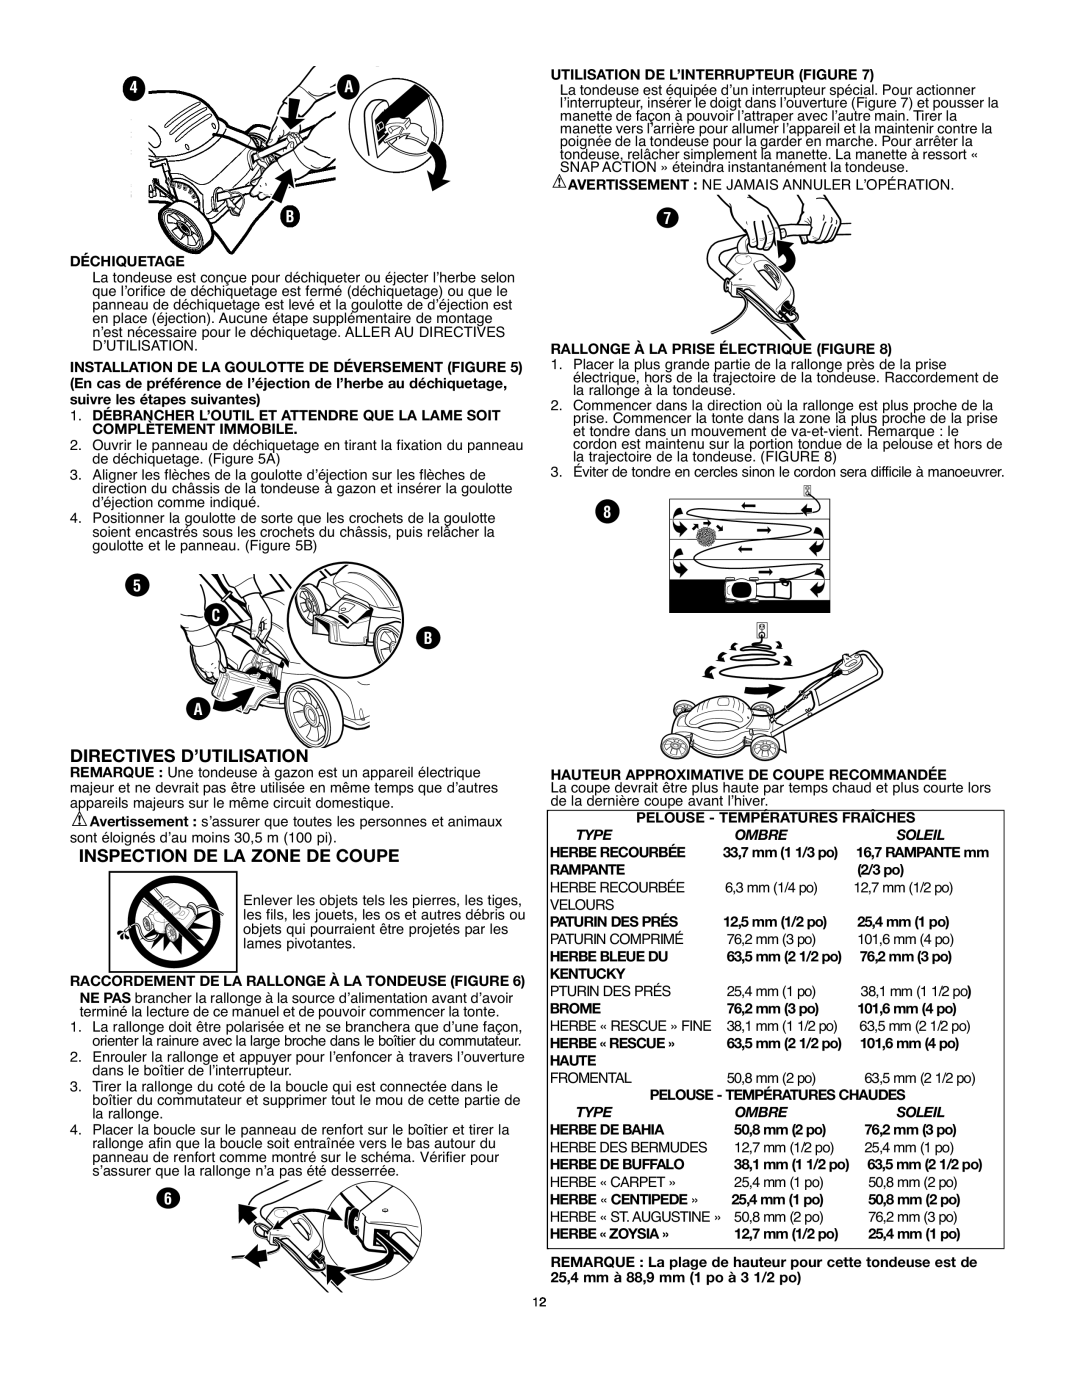 Black & Decker MM575 instruction manual Directives D’Utilisation, Inspection De La Zone De Coupe, C B A 